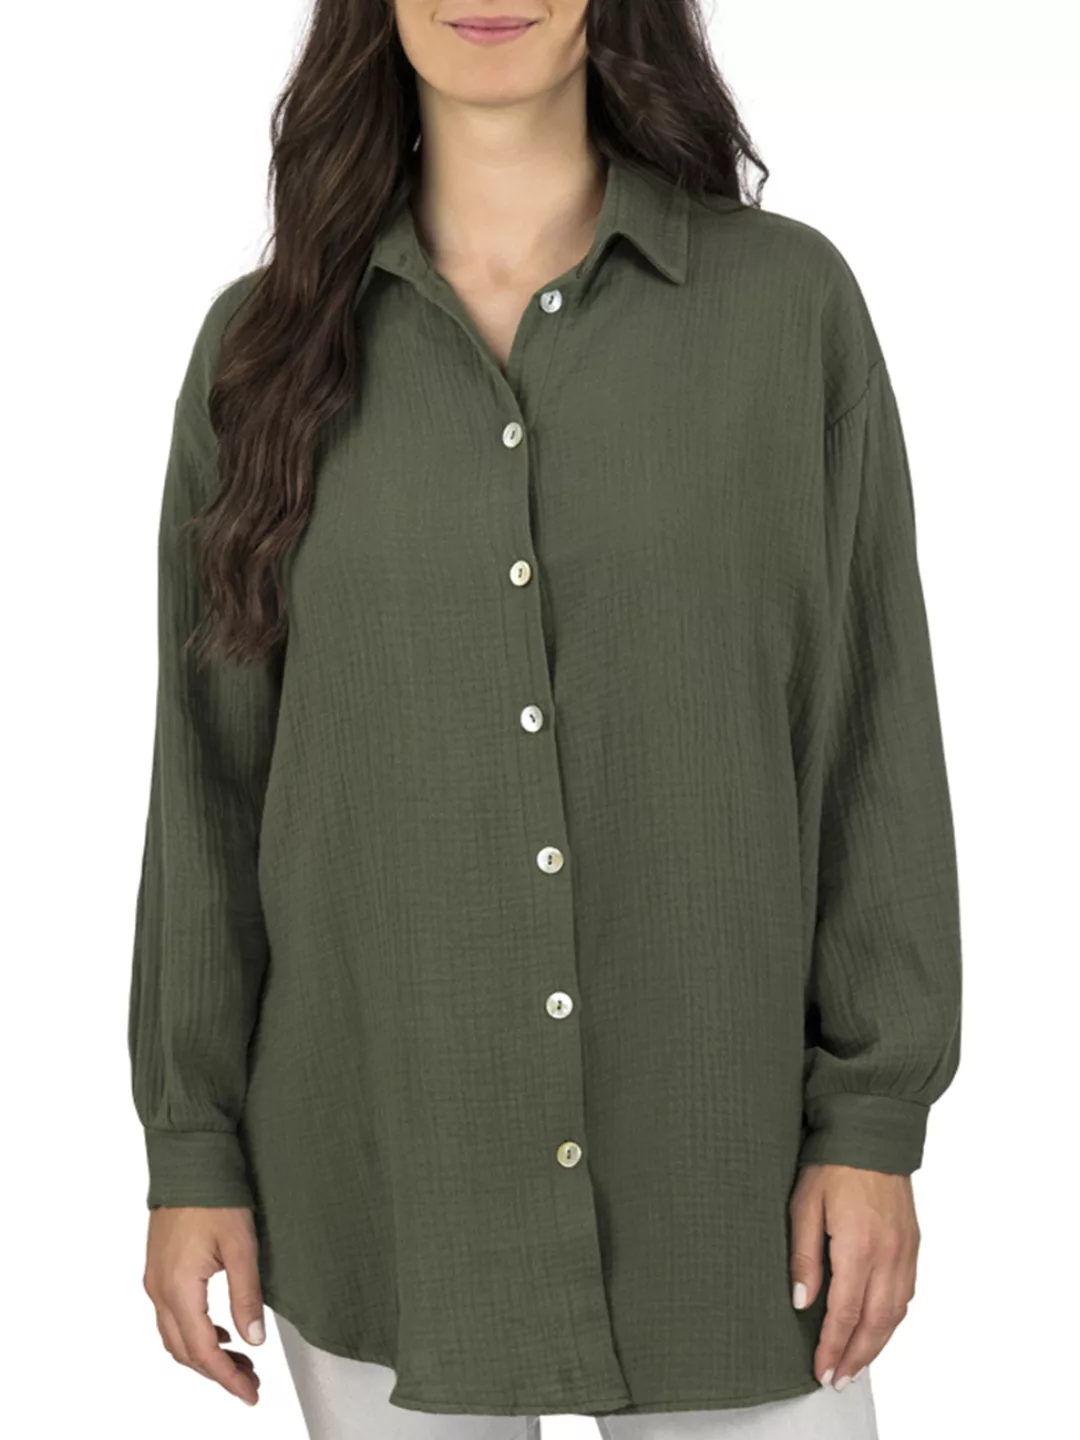 DENIMFY Musseline Bluse Damen Oversized DFMathilda günstig online kaufen